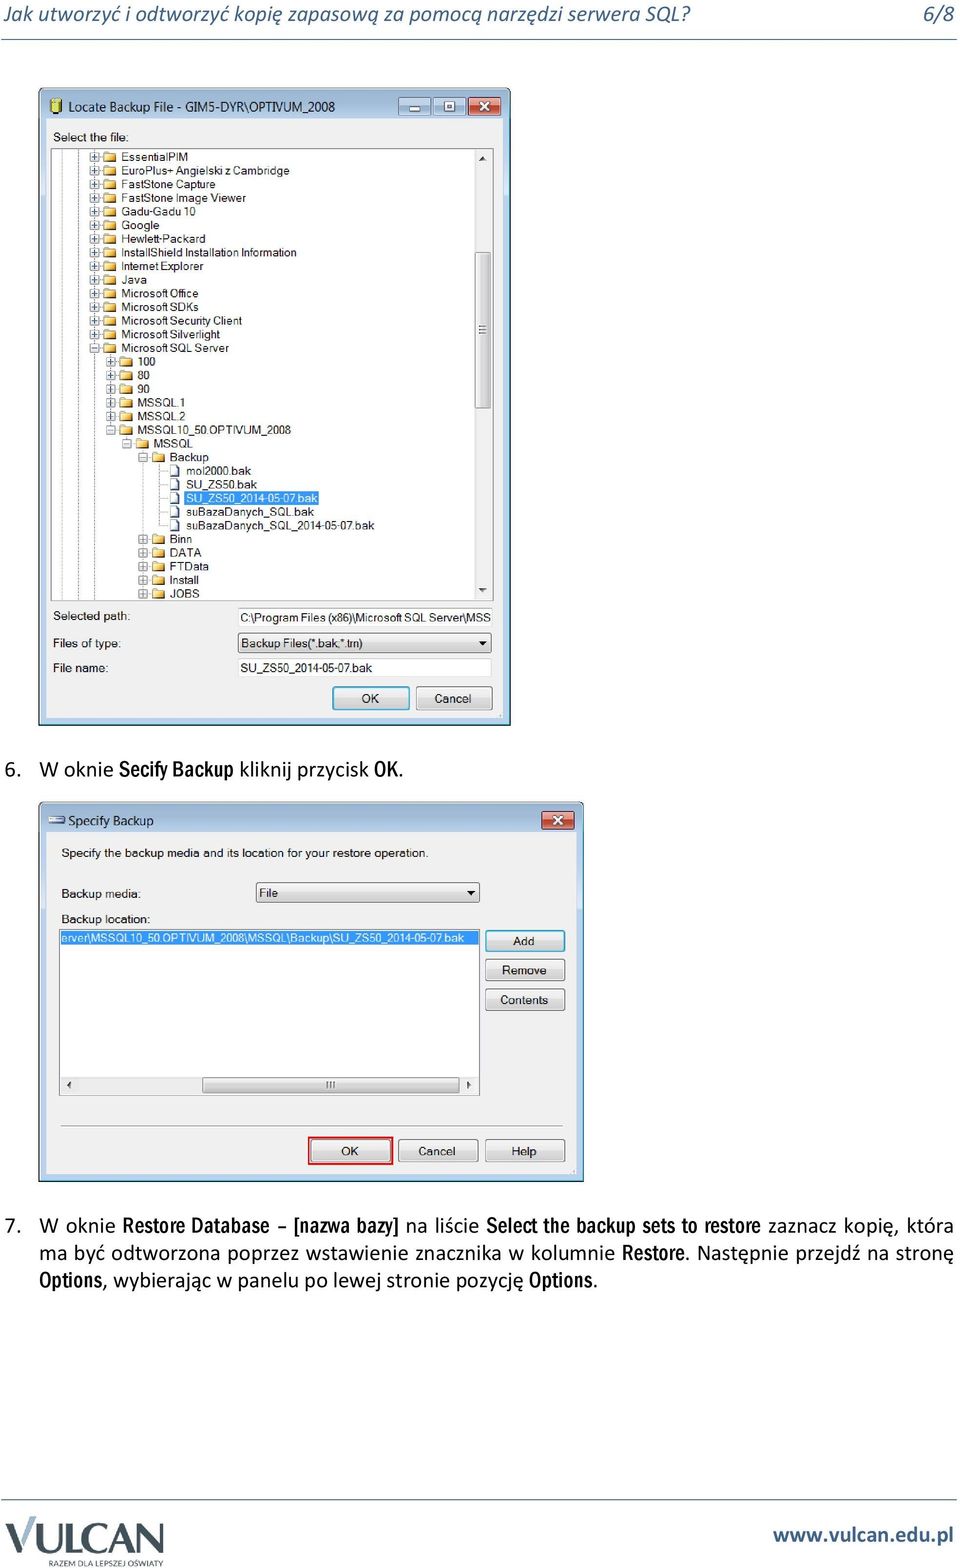 W oknie Restore Database [nazwa bazy] na liście Select the backup sets to restore zaznacz kopię,